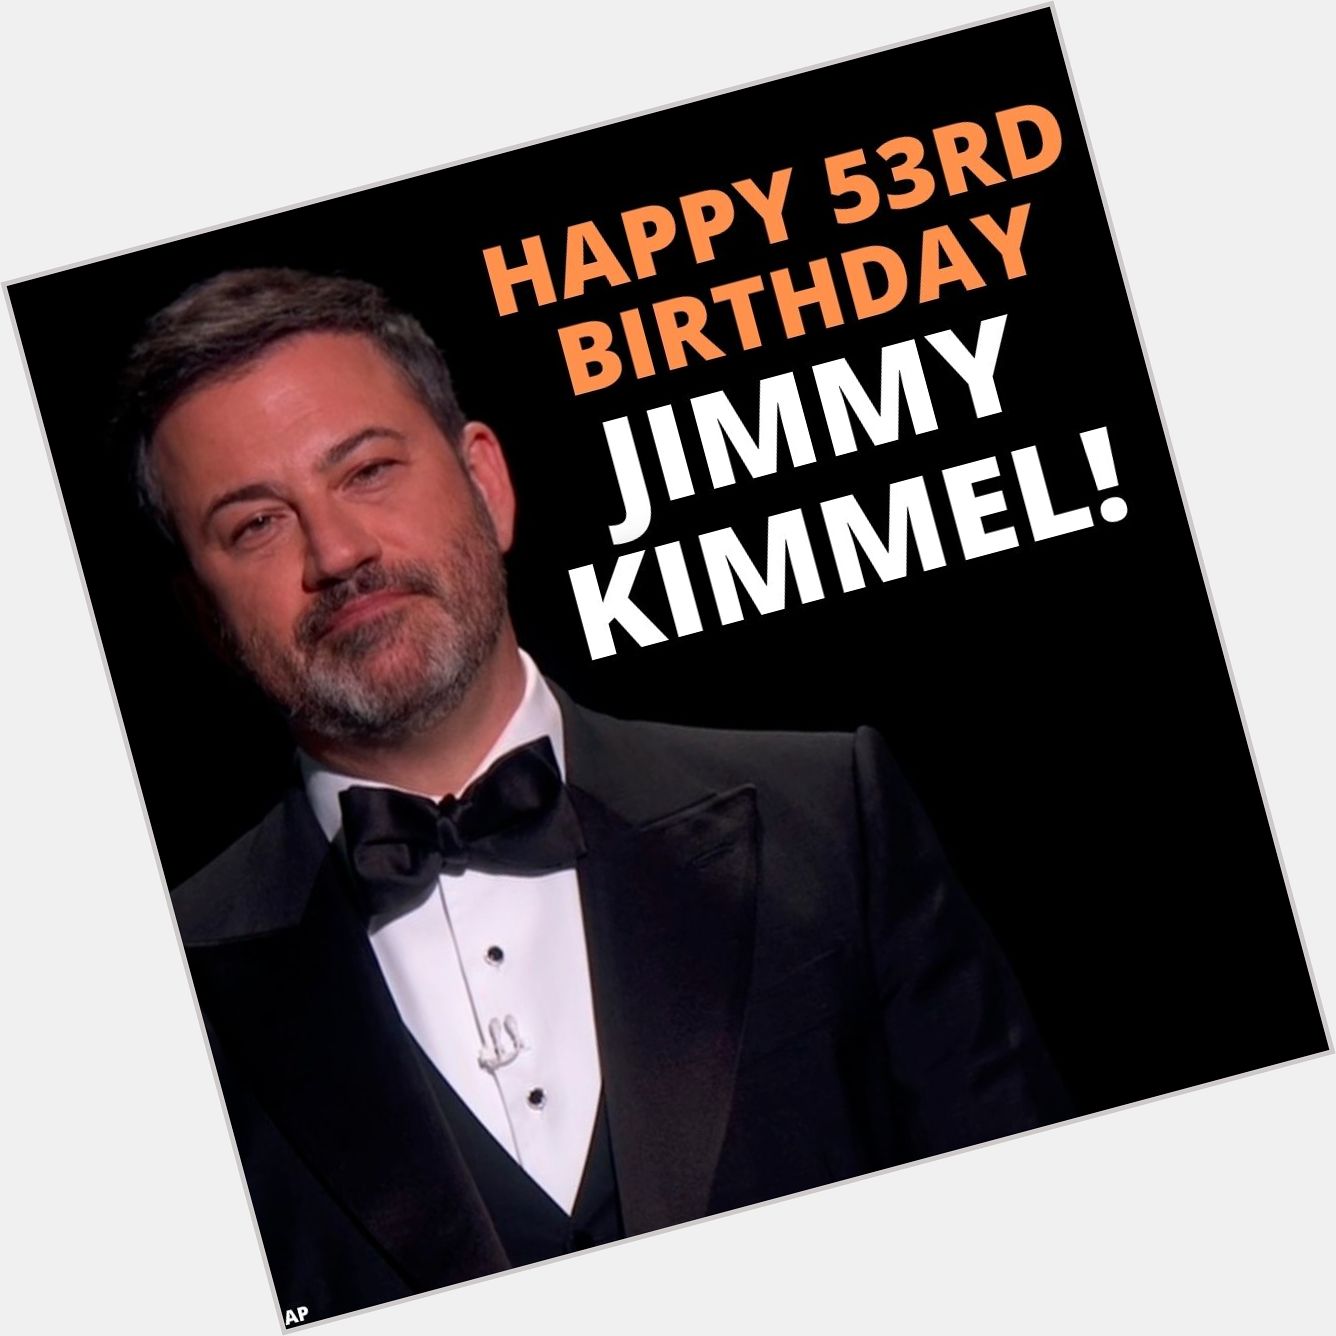 HAPPY BIRTHDAY!
Jimmy Kimmel turns 53 today. 